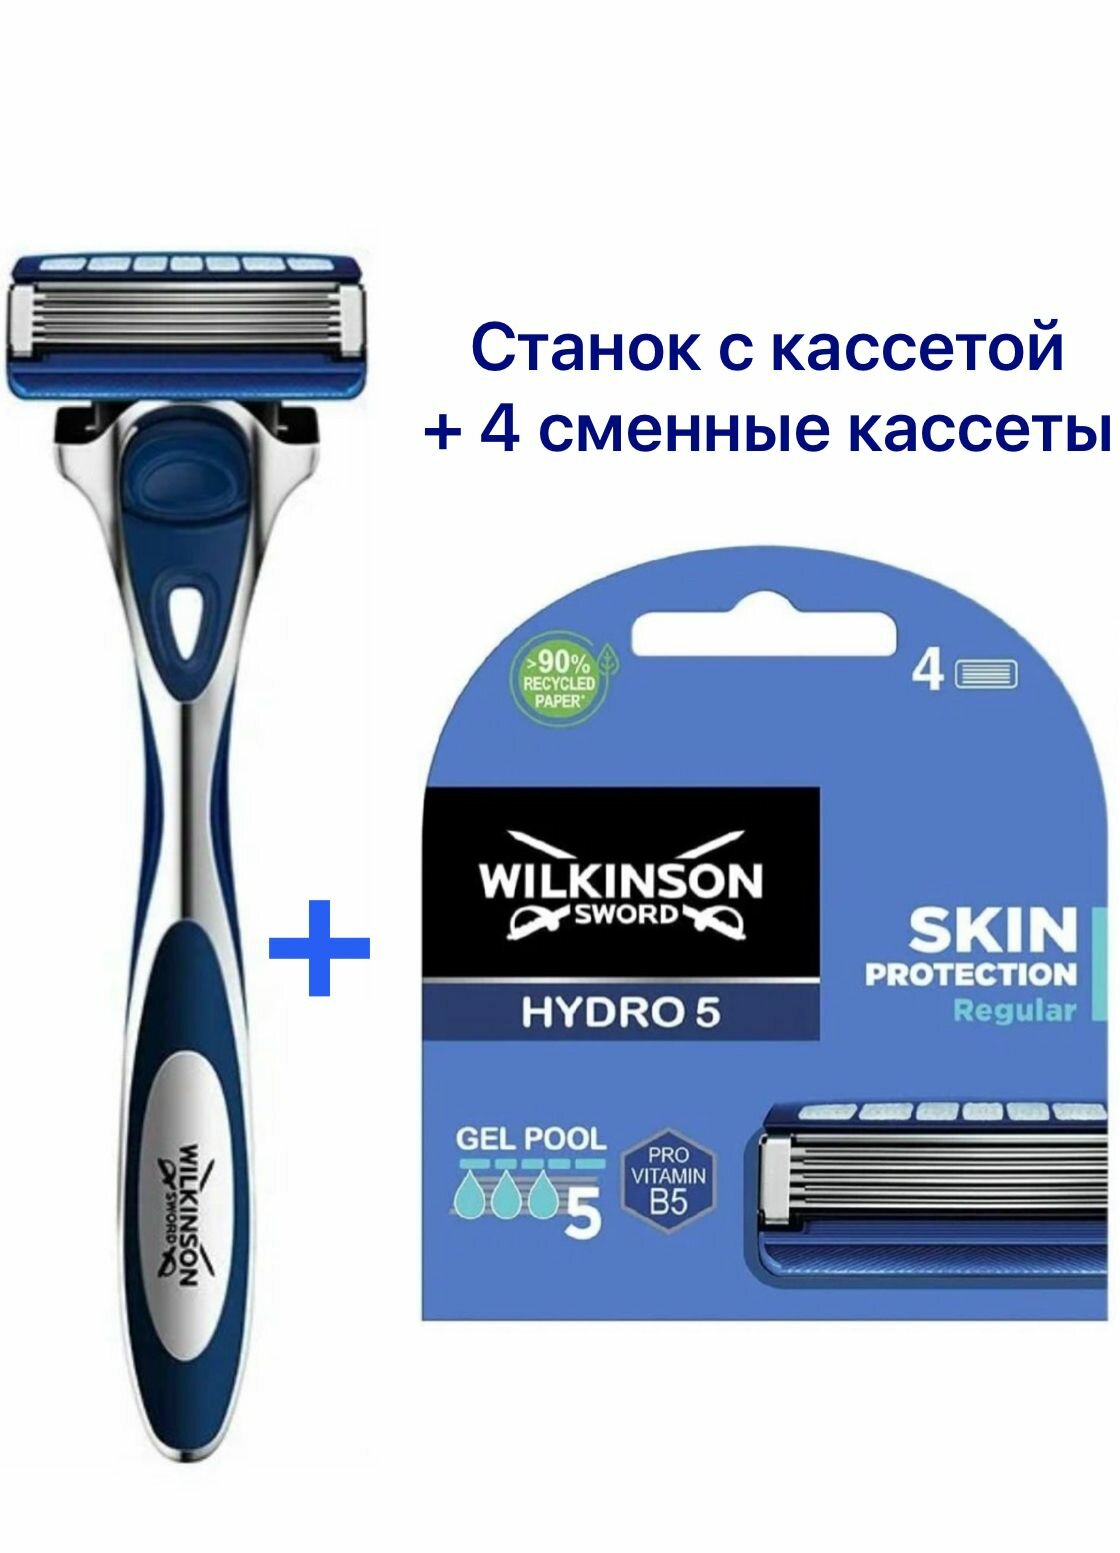 Wilkinson Sword Hydro5 Станок с кассетой + 4 сменные кассеты Regular Skin Protection